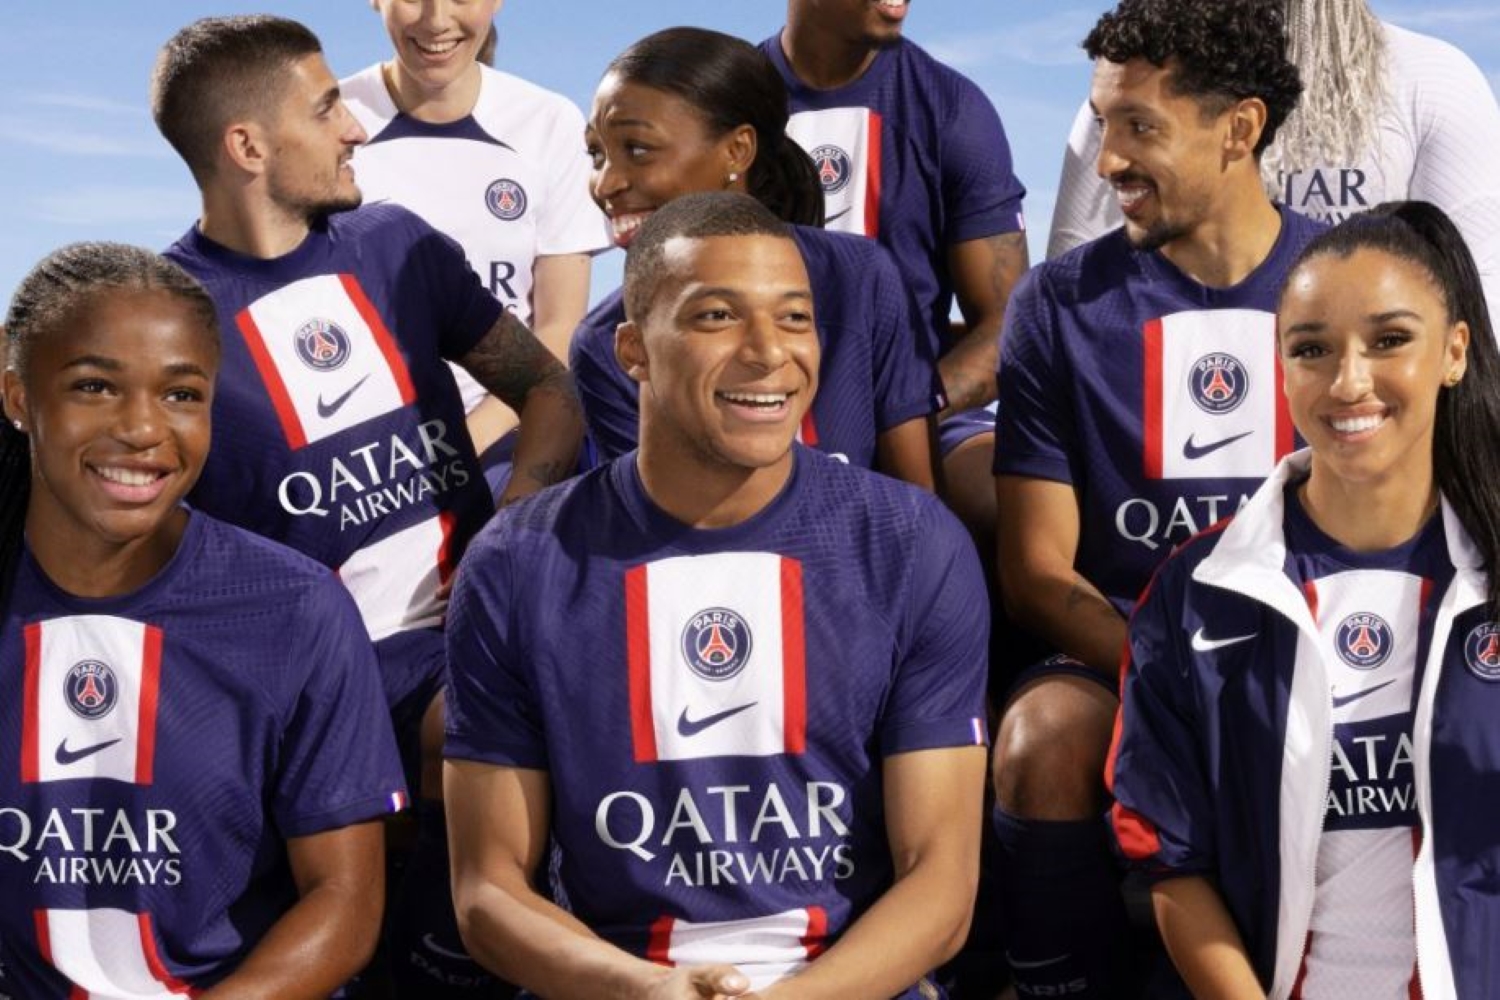 Vente de maillots, sponsoring, Urssaf… le PSG publie son rapport